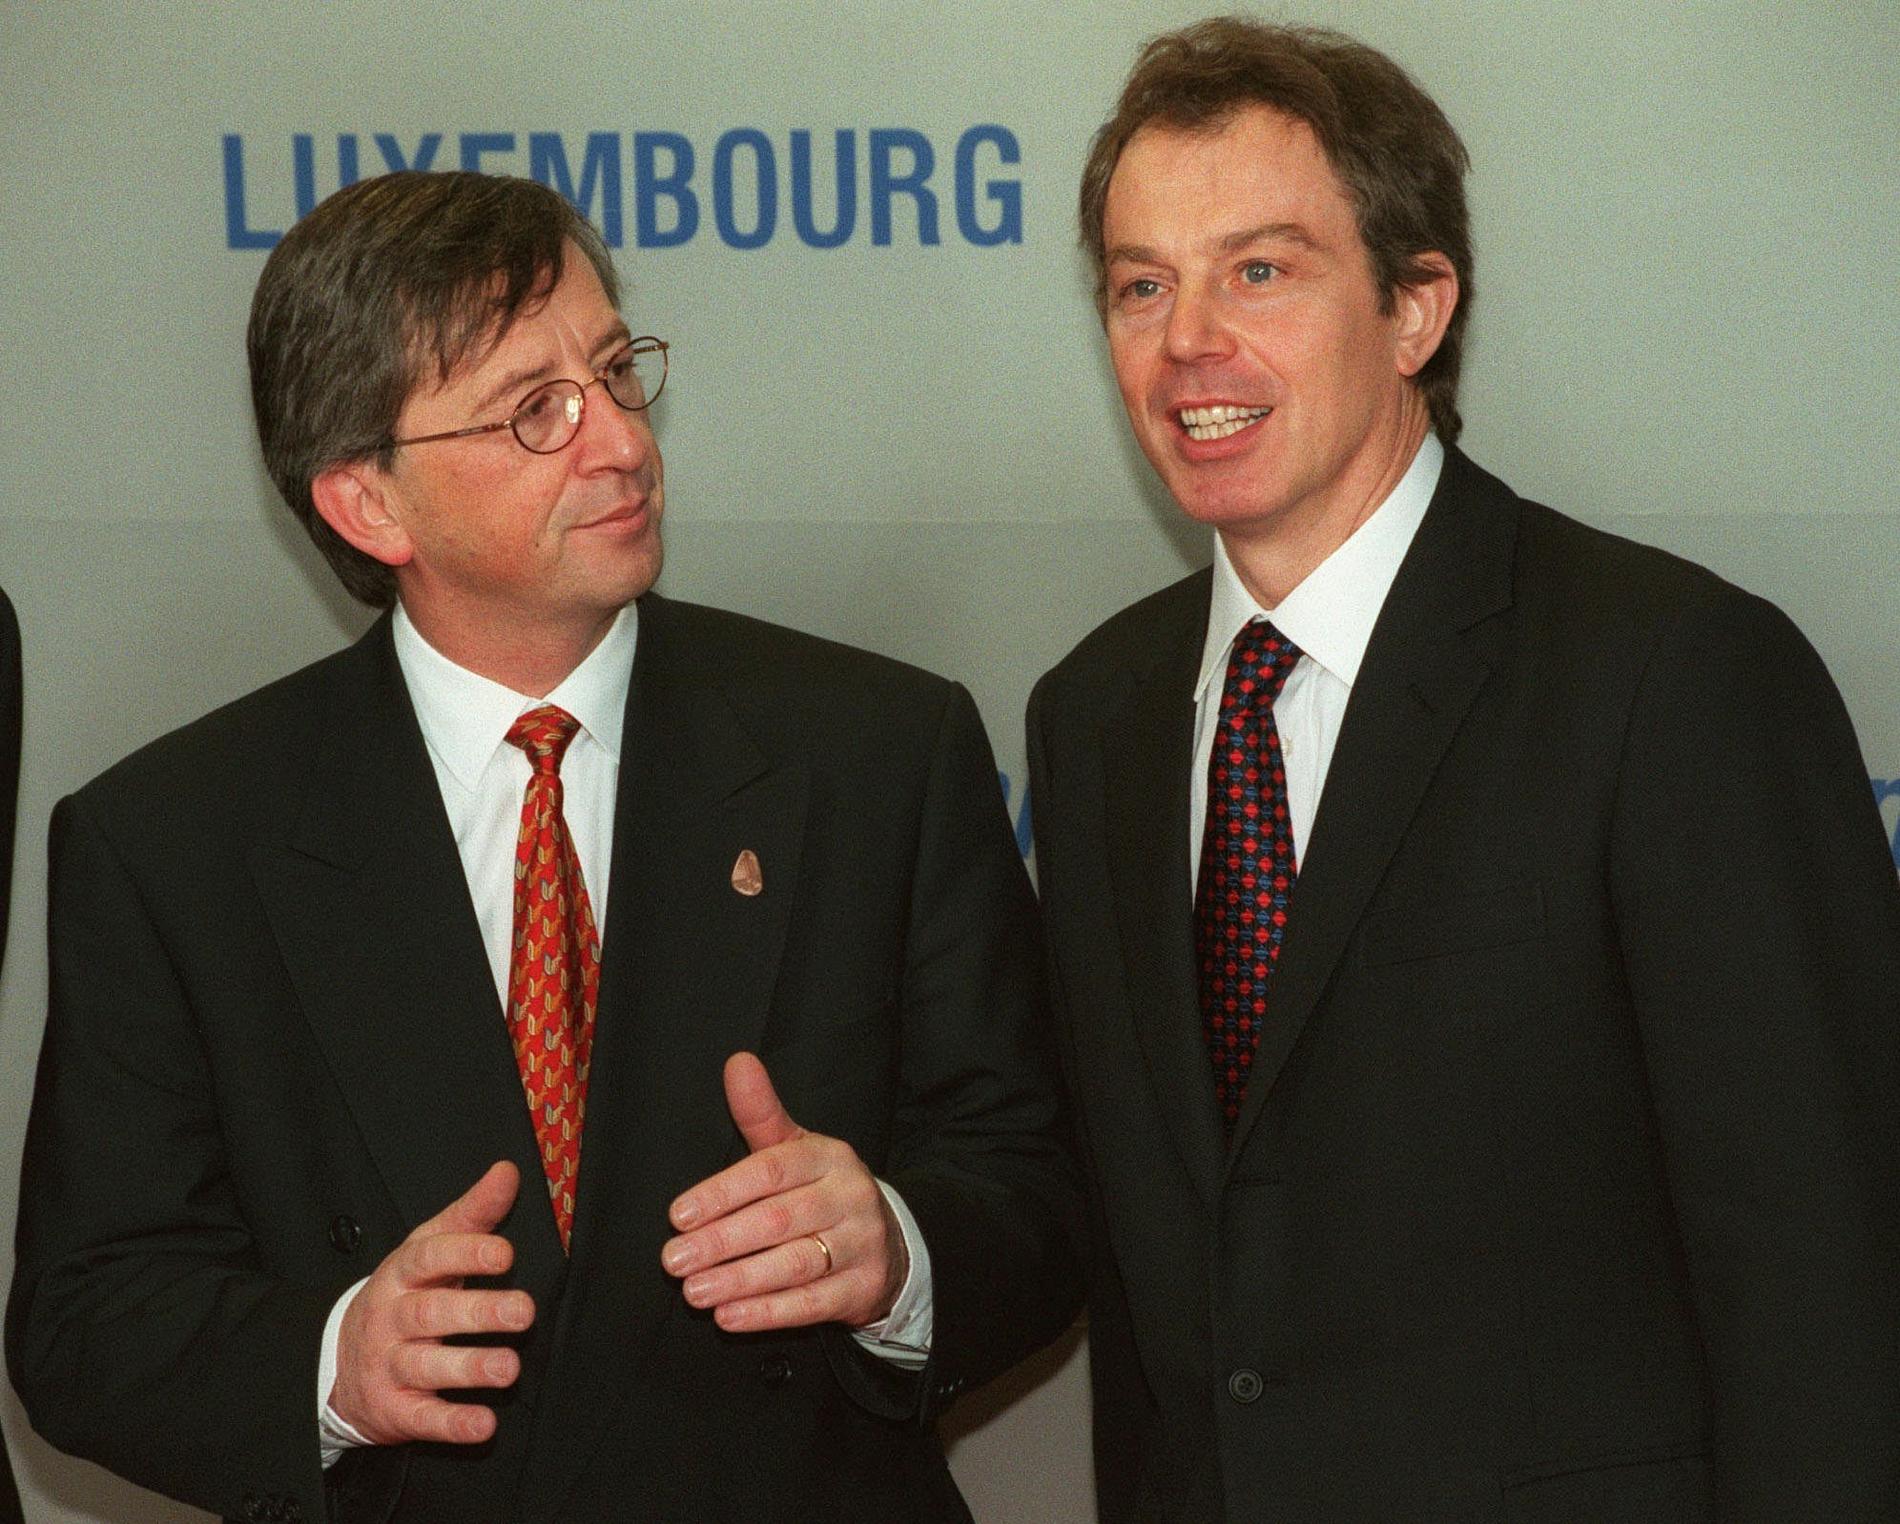 Luxemburgs dåvarande premiärminister Jean-Claude Juncker med sin brittiske kollega Tony Blair på EU-toppmöte i Luxemburg i december 1997.